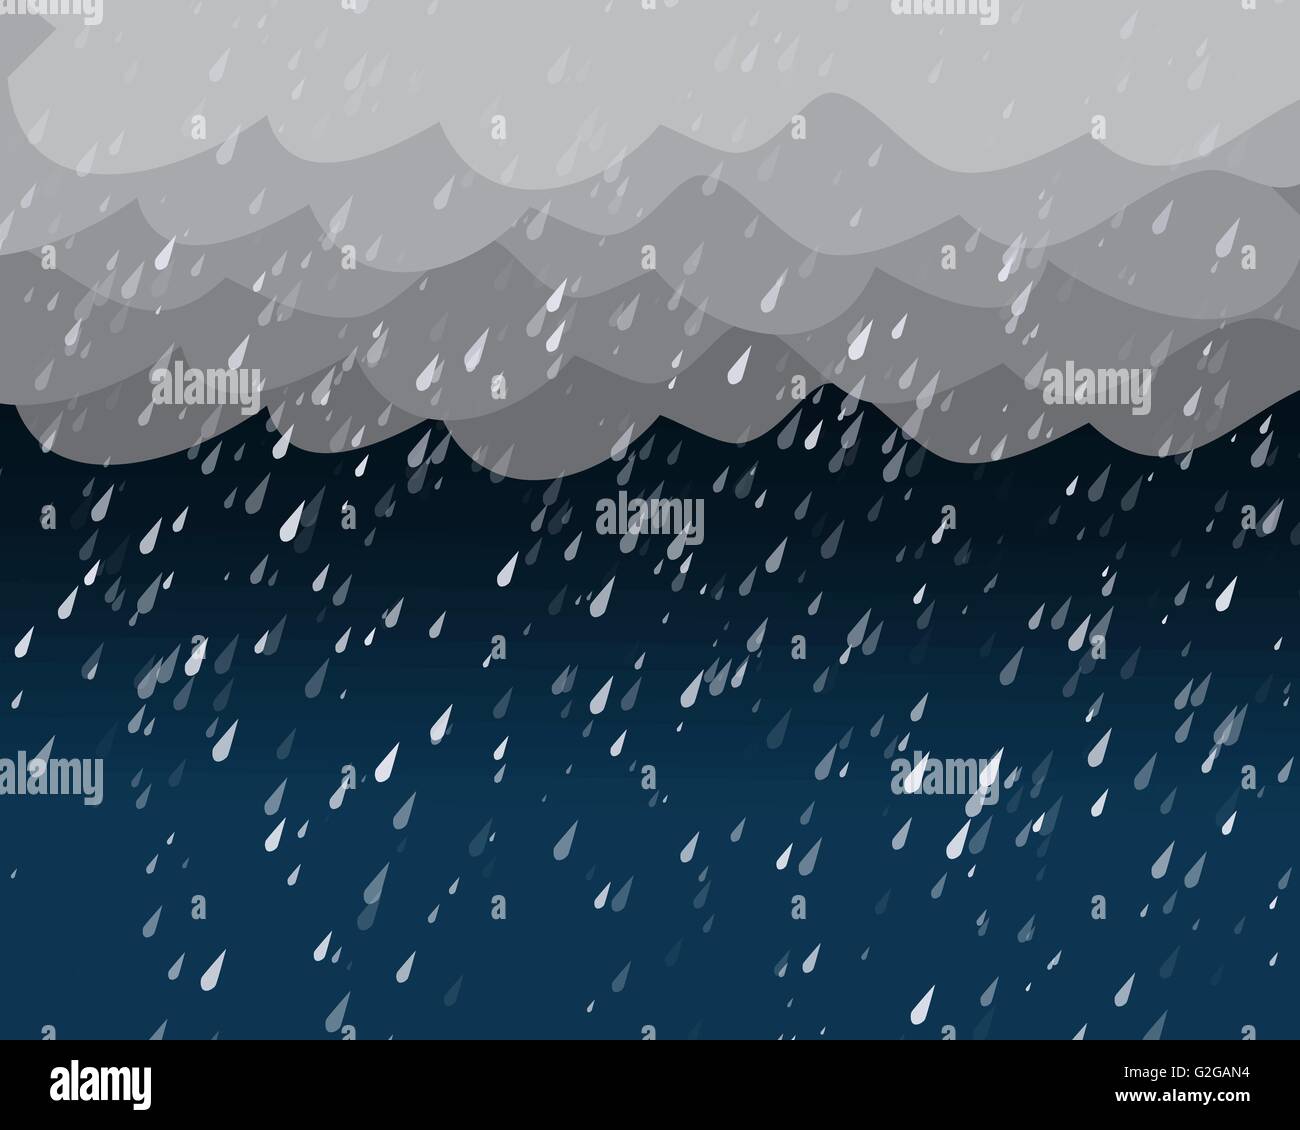 Fortes pluies en ciel sombre, vector background Illustration de Vecteur